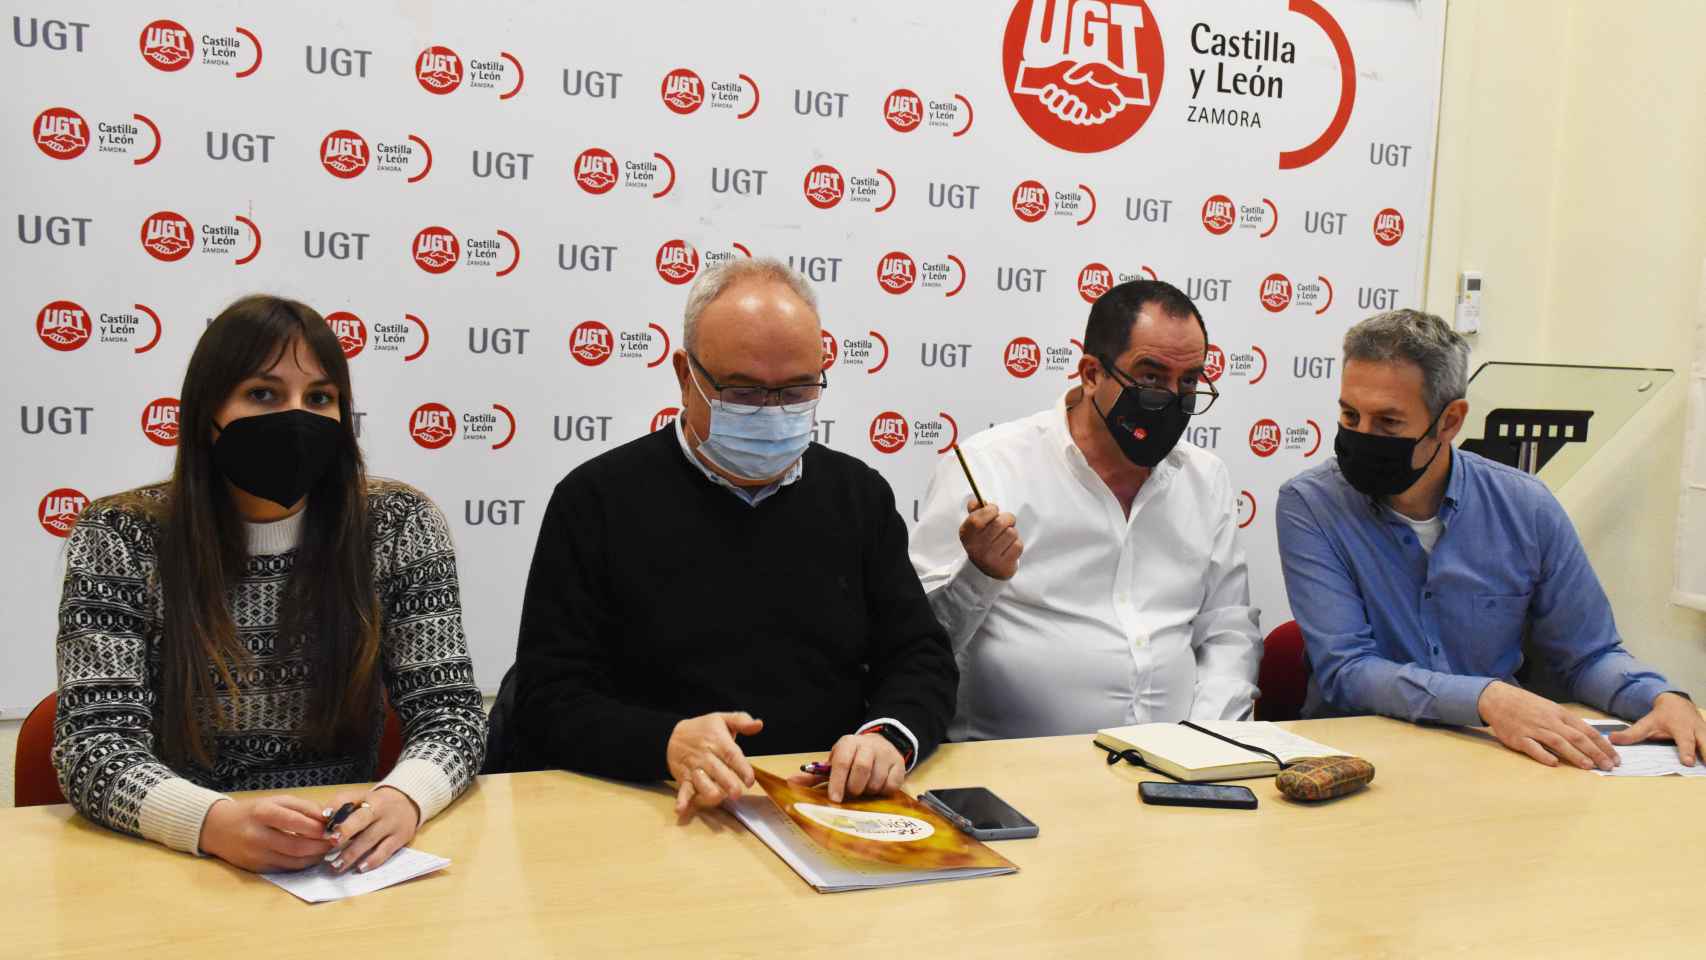 El secretario provincial de UGT Zamora, Ángel del Carmen; y el secretario provincial de UGT Valladolid, Luis Rivera